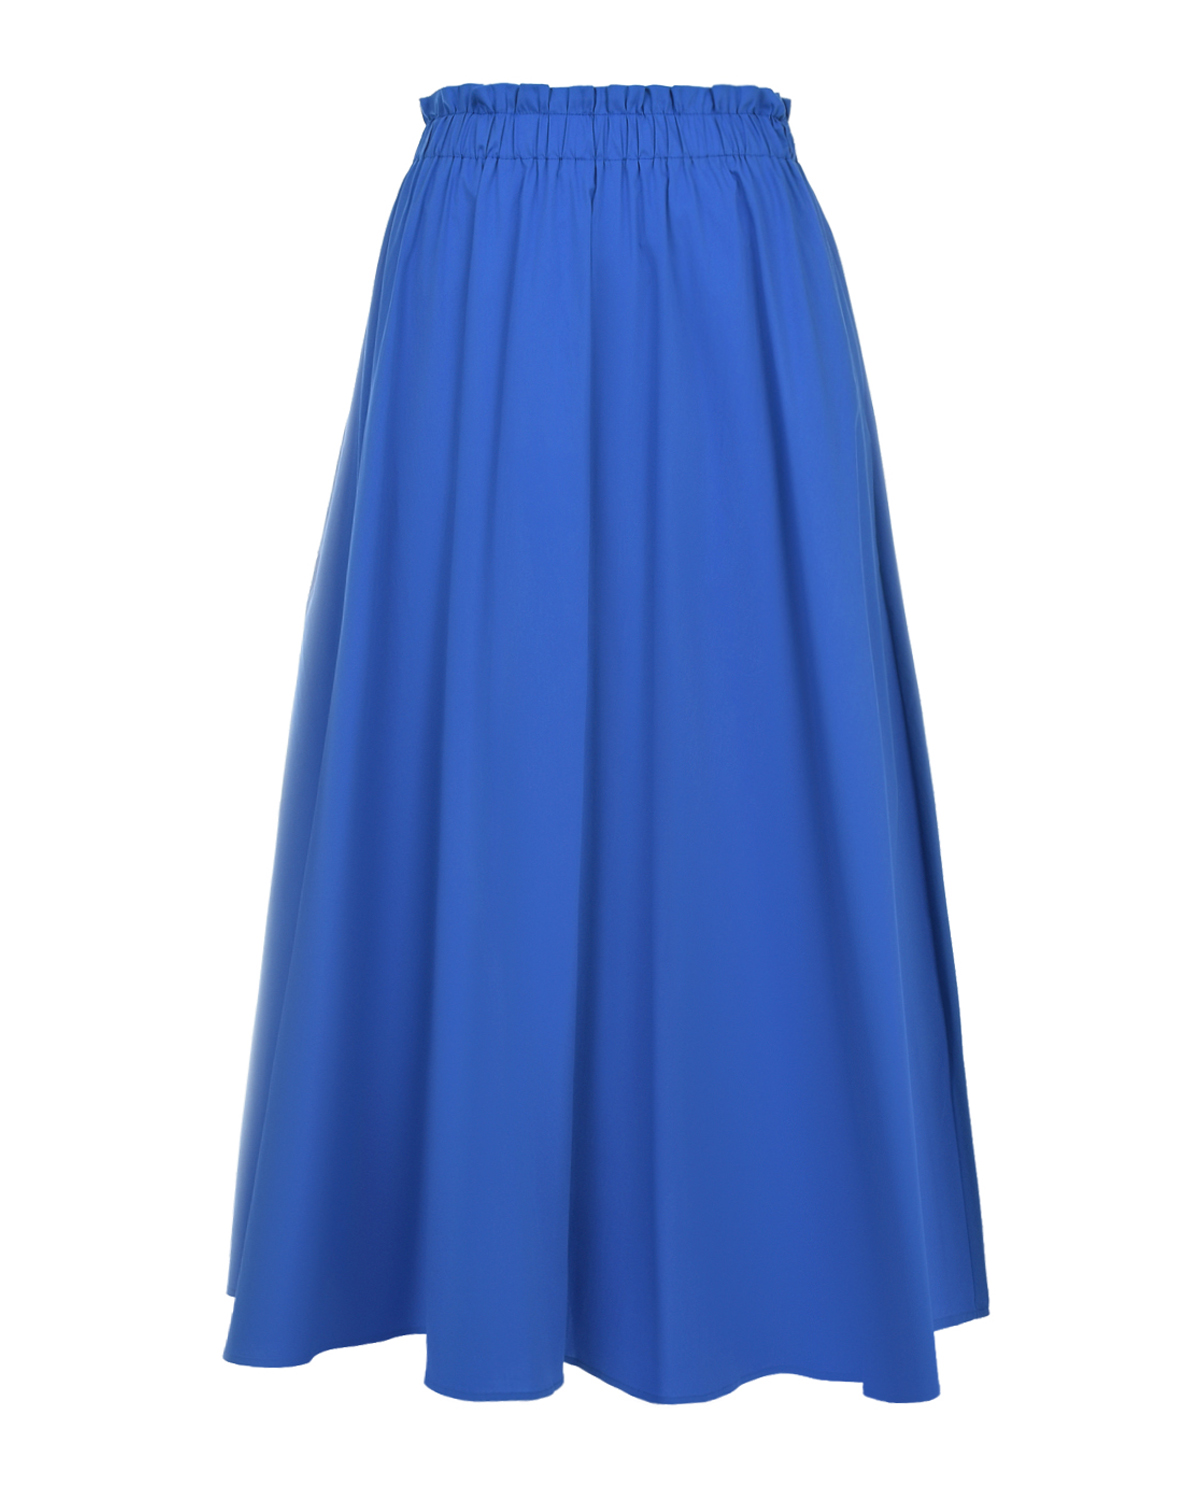 Синяя юбка с поясом на резинке Pietro Brunelli синяя юбка с растительным принтом pietro brunelli